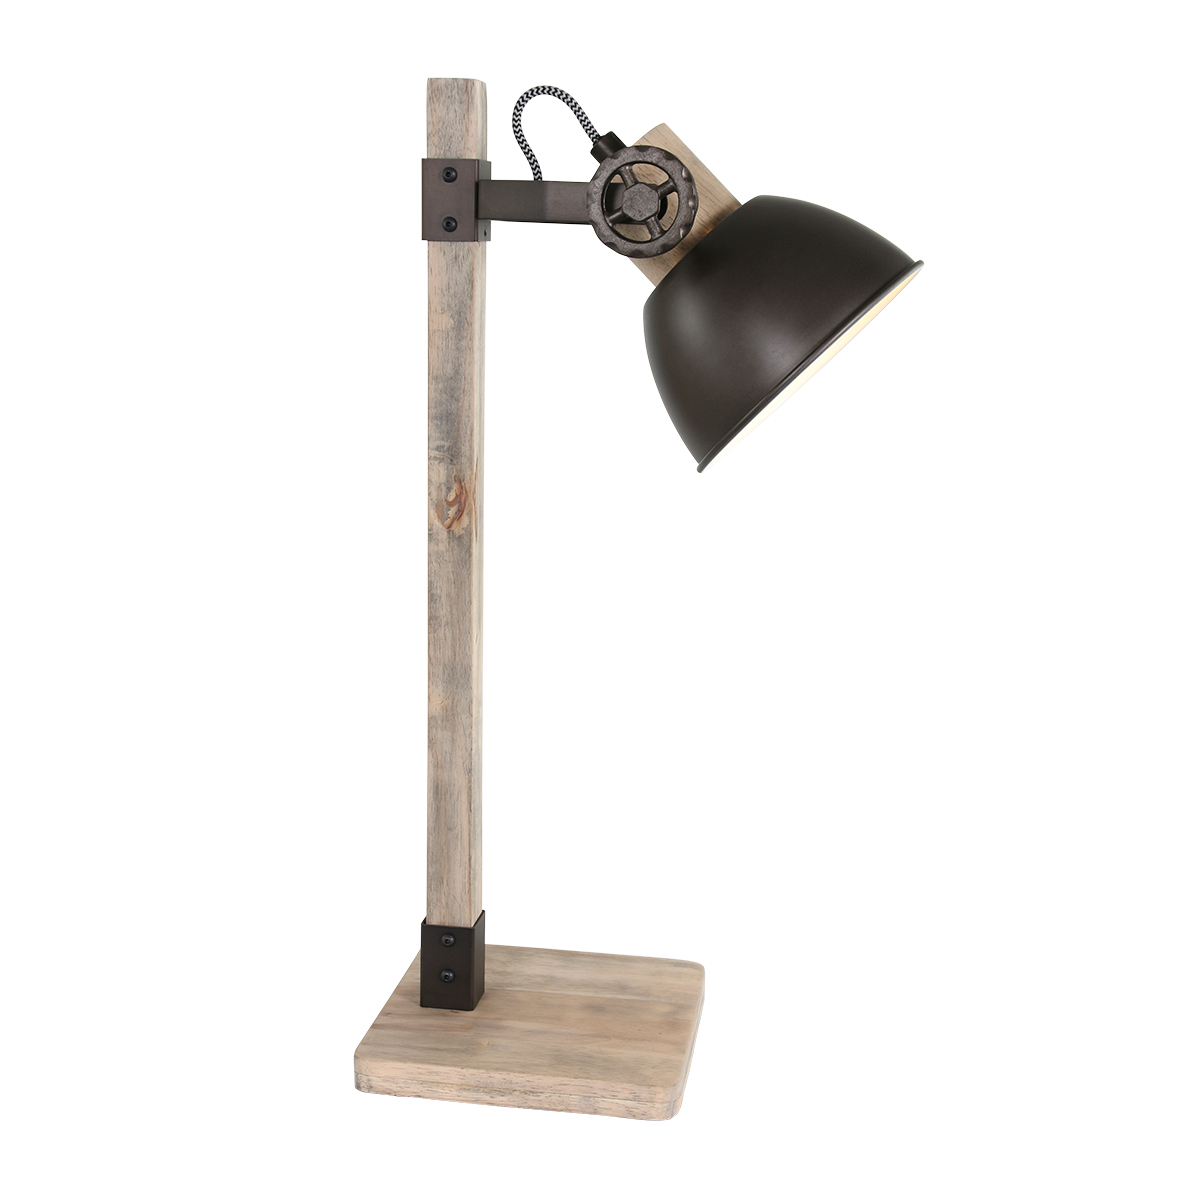 Tafellamp Gearwood | 1 lichts |Ø 15 cm | bruin / zwart | hout / metaal | bureaulamp | modern /